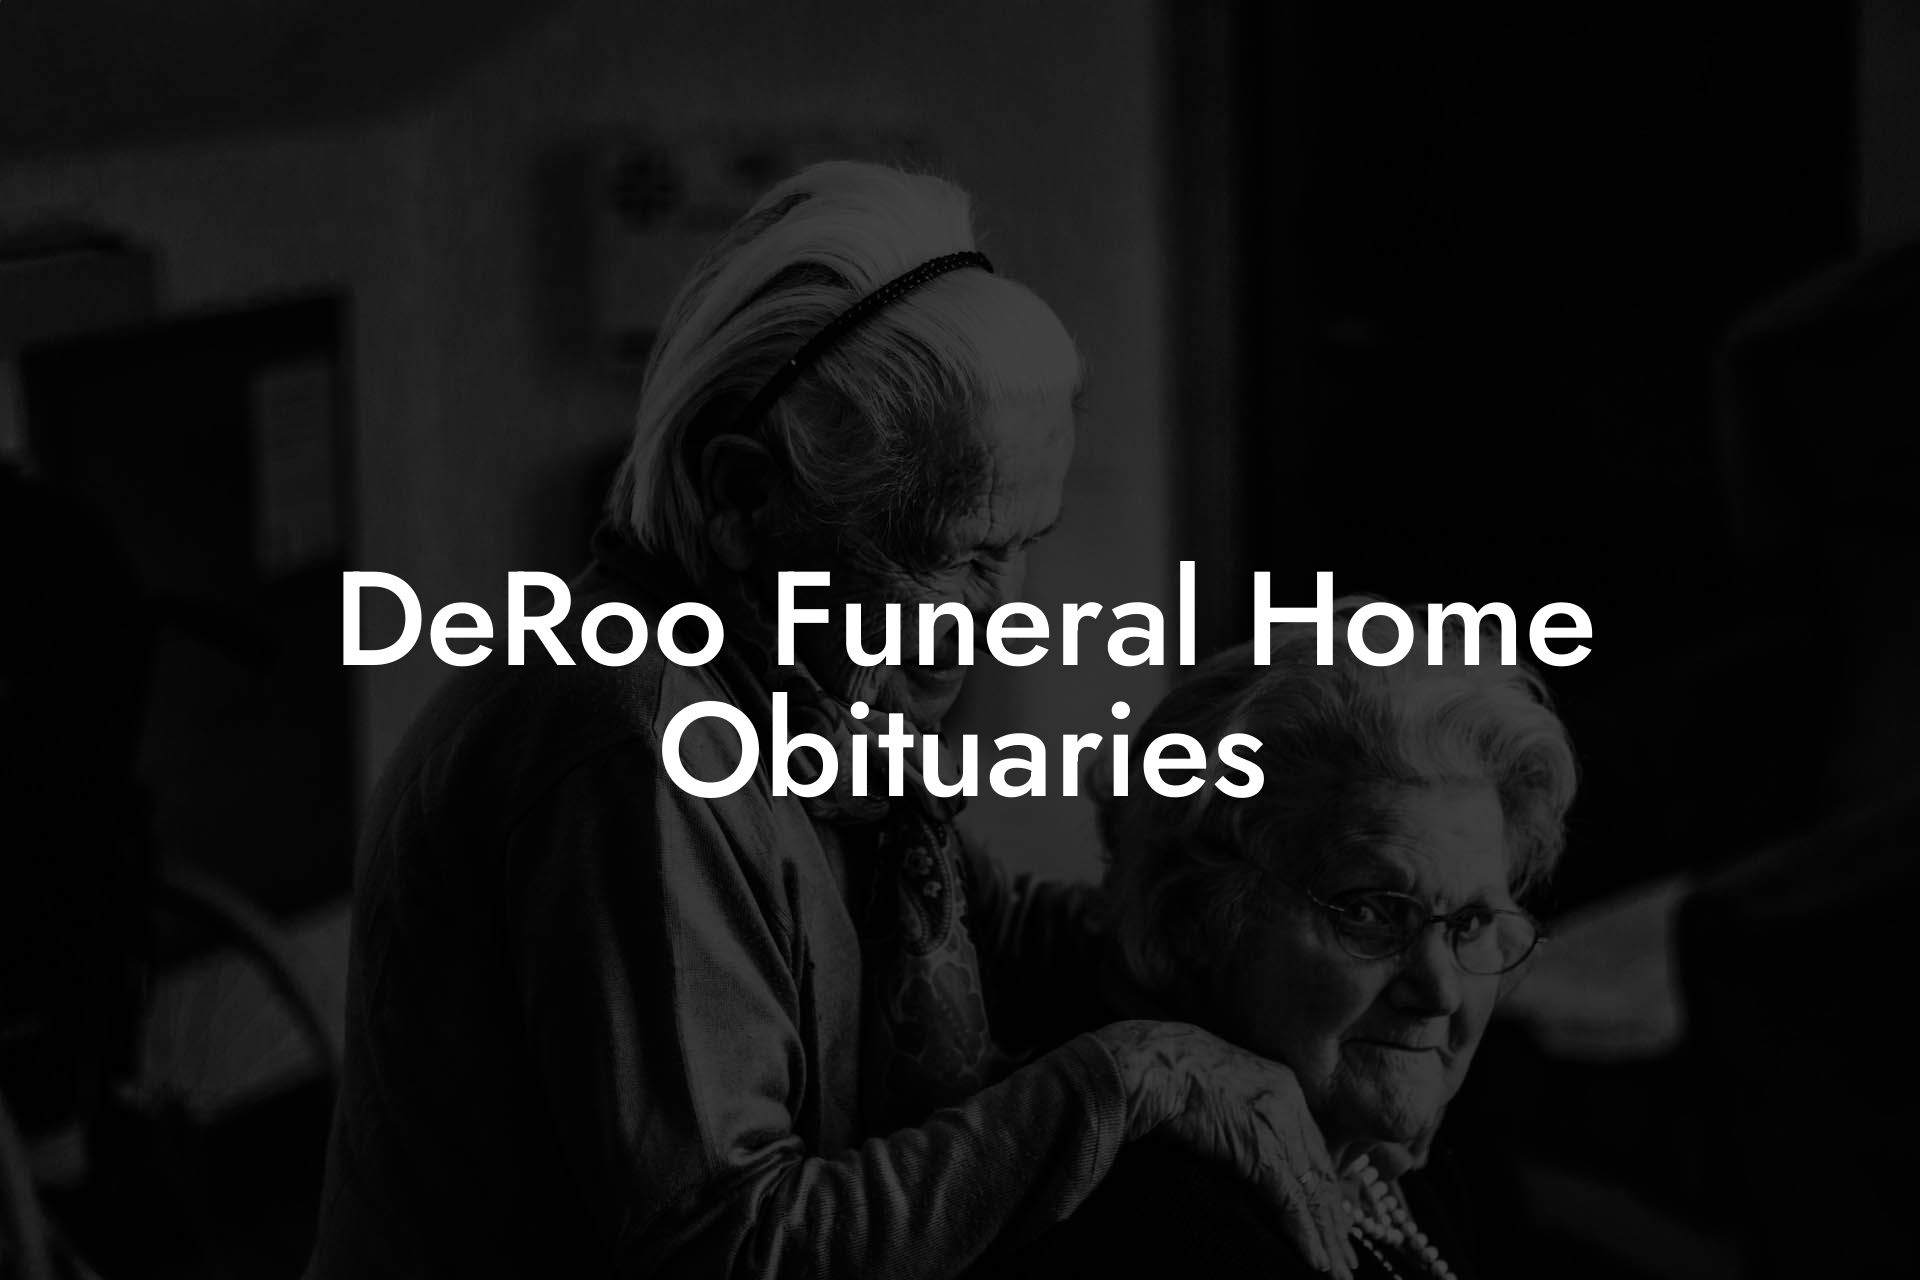 DeRoo Funeral Home Obituaries